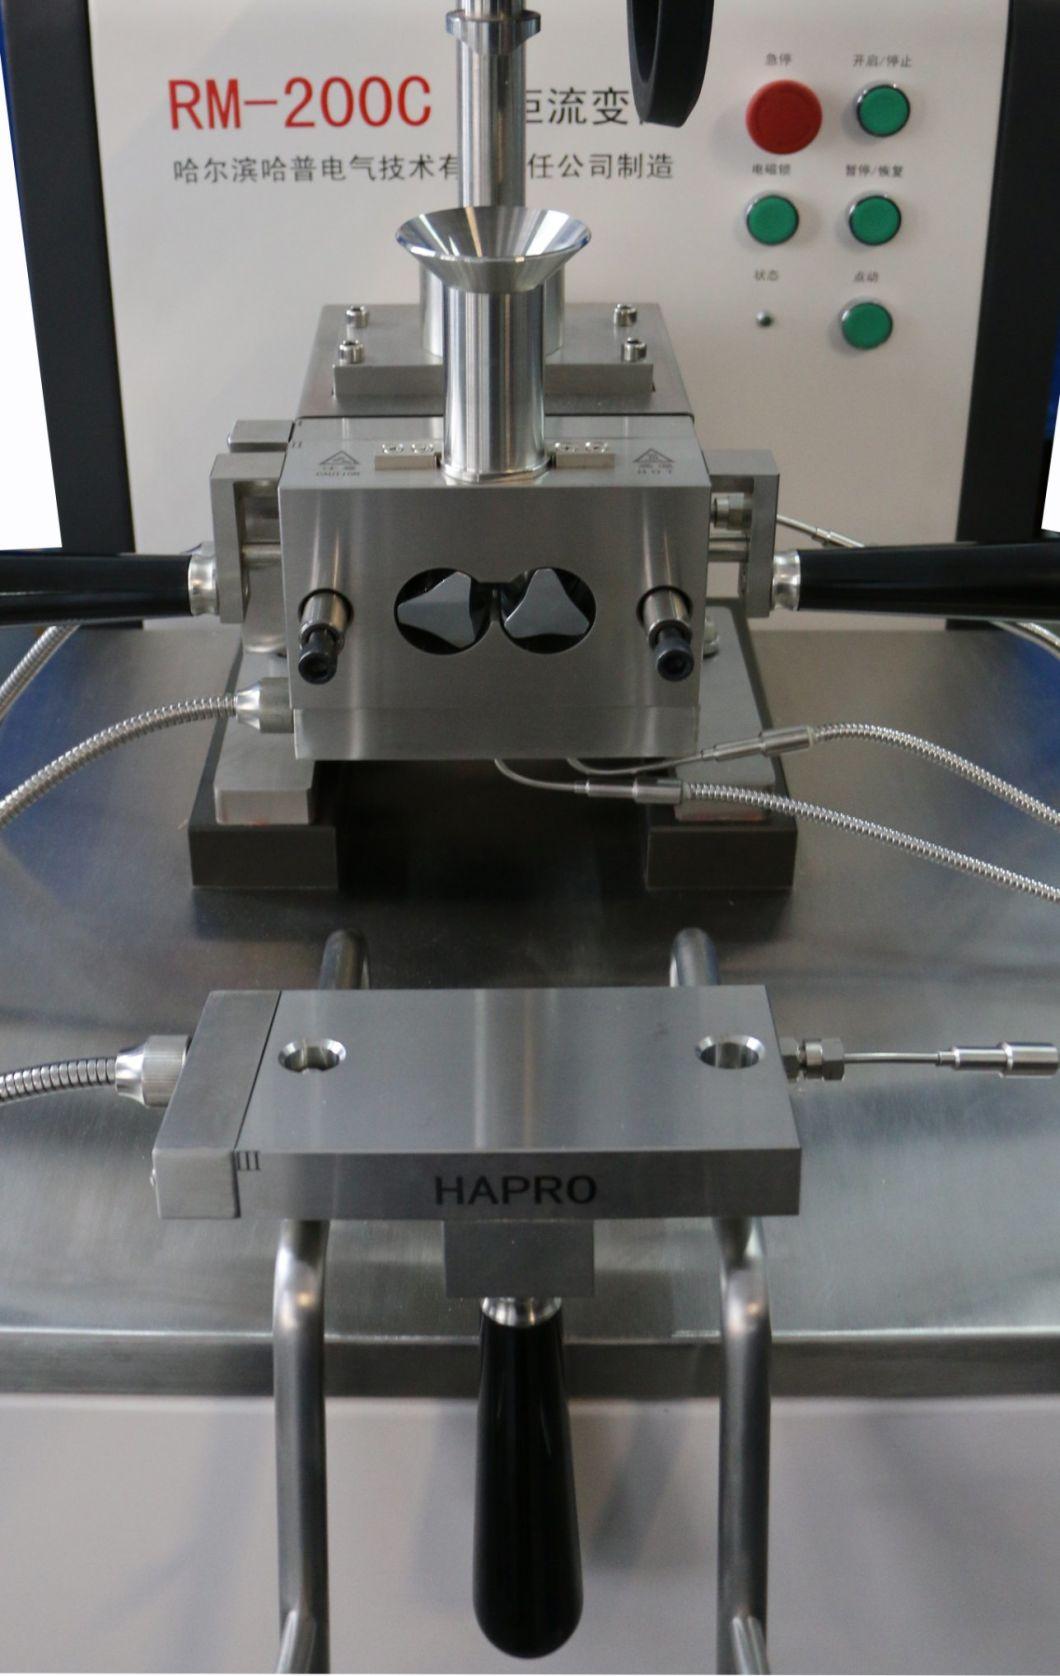 Test Chambers of Laboratory Universal Mixer Testing Equipment